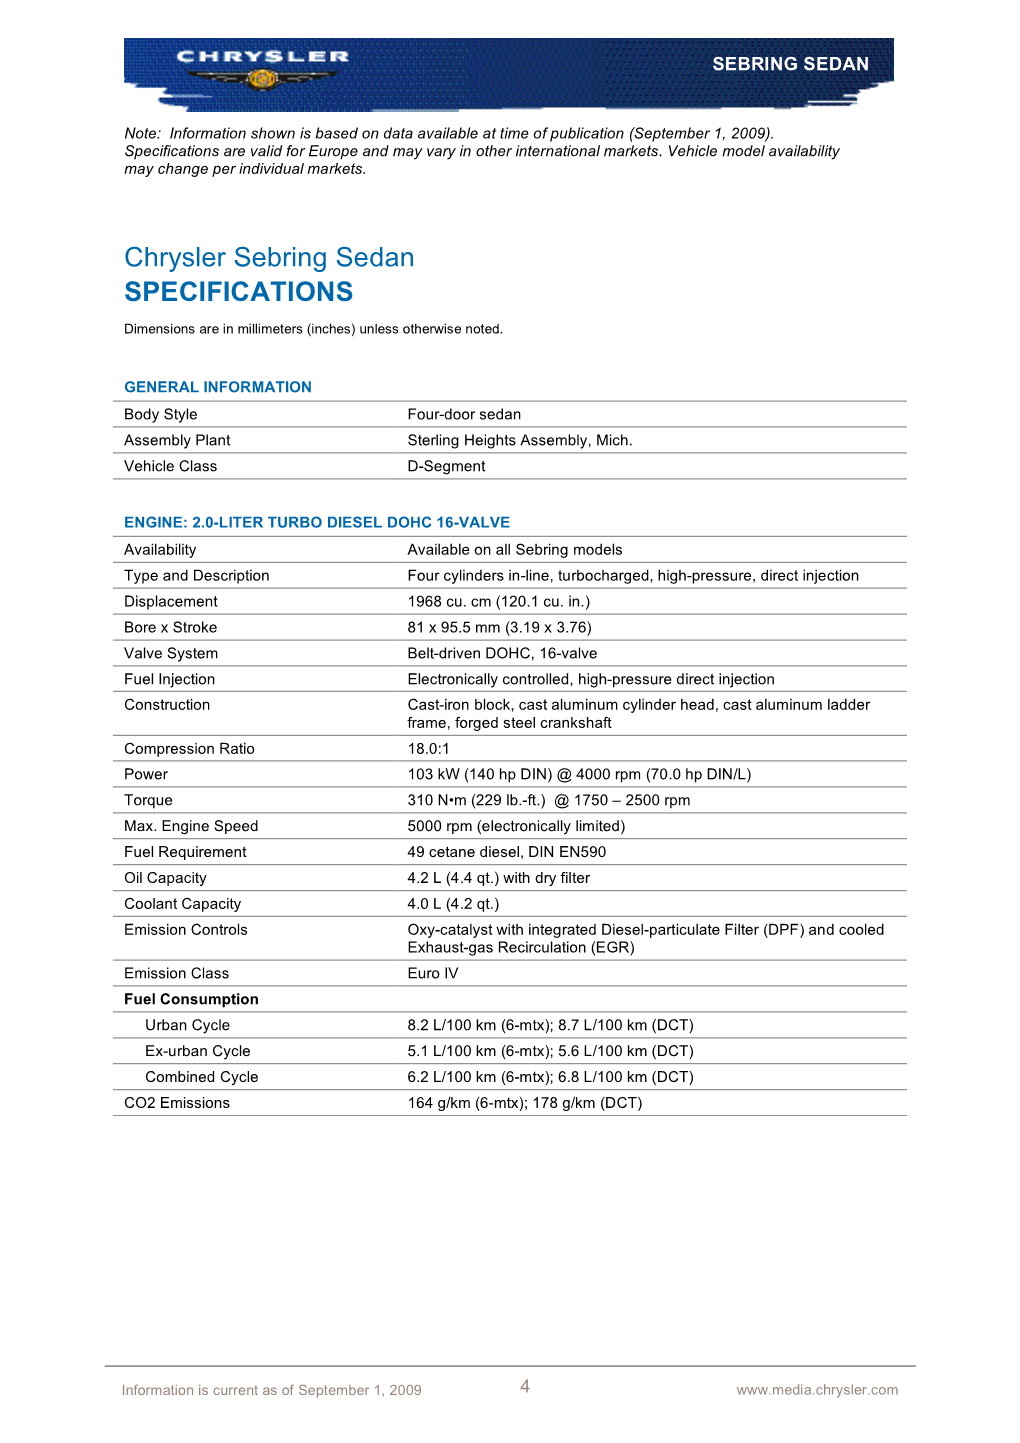 Chrysler Sebring Sedan SPECIFICATIONS